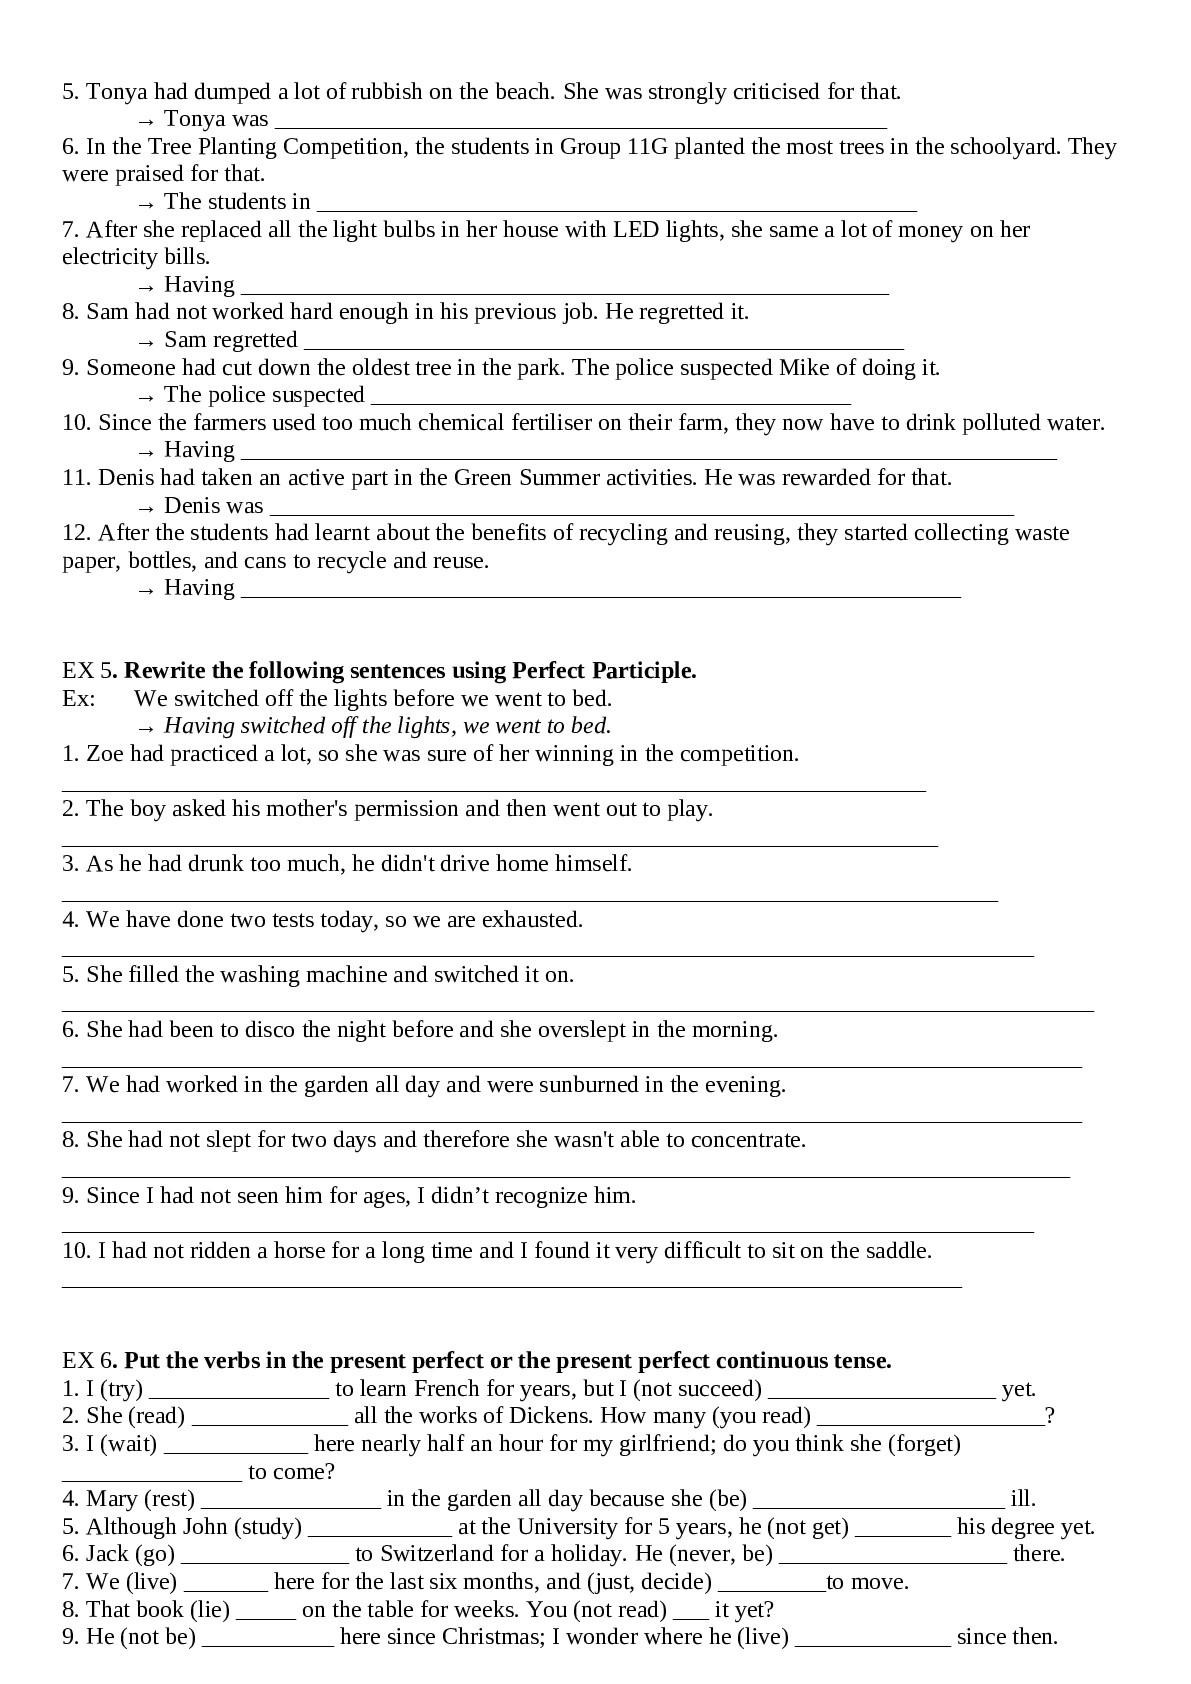 Đề cương ôn tập Tiếng Anh giữa học kì 2 đầy đủ (trang 5)